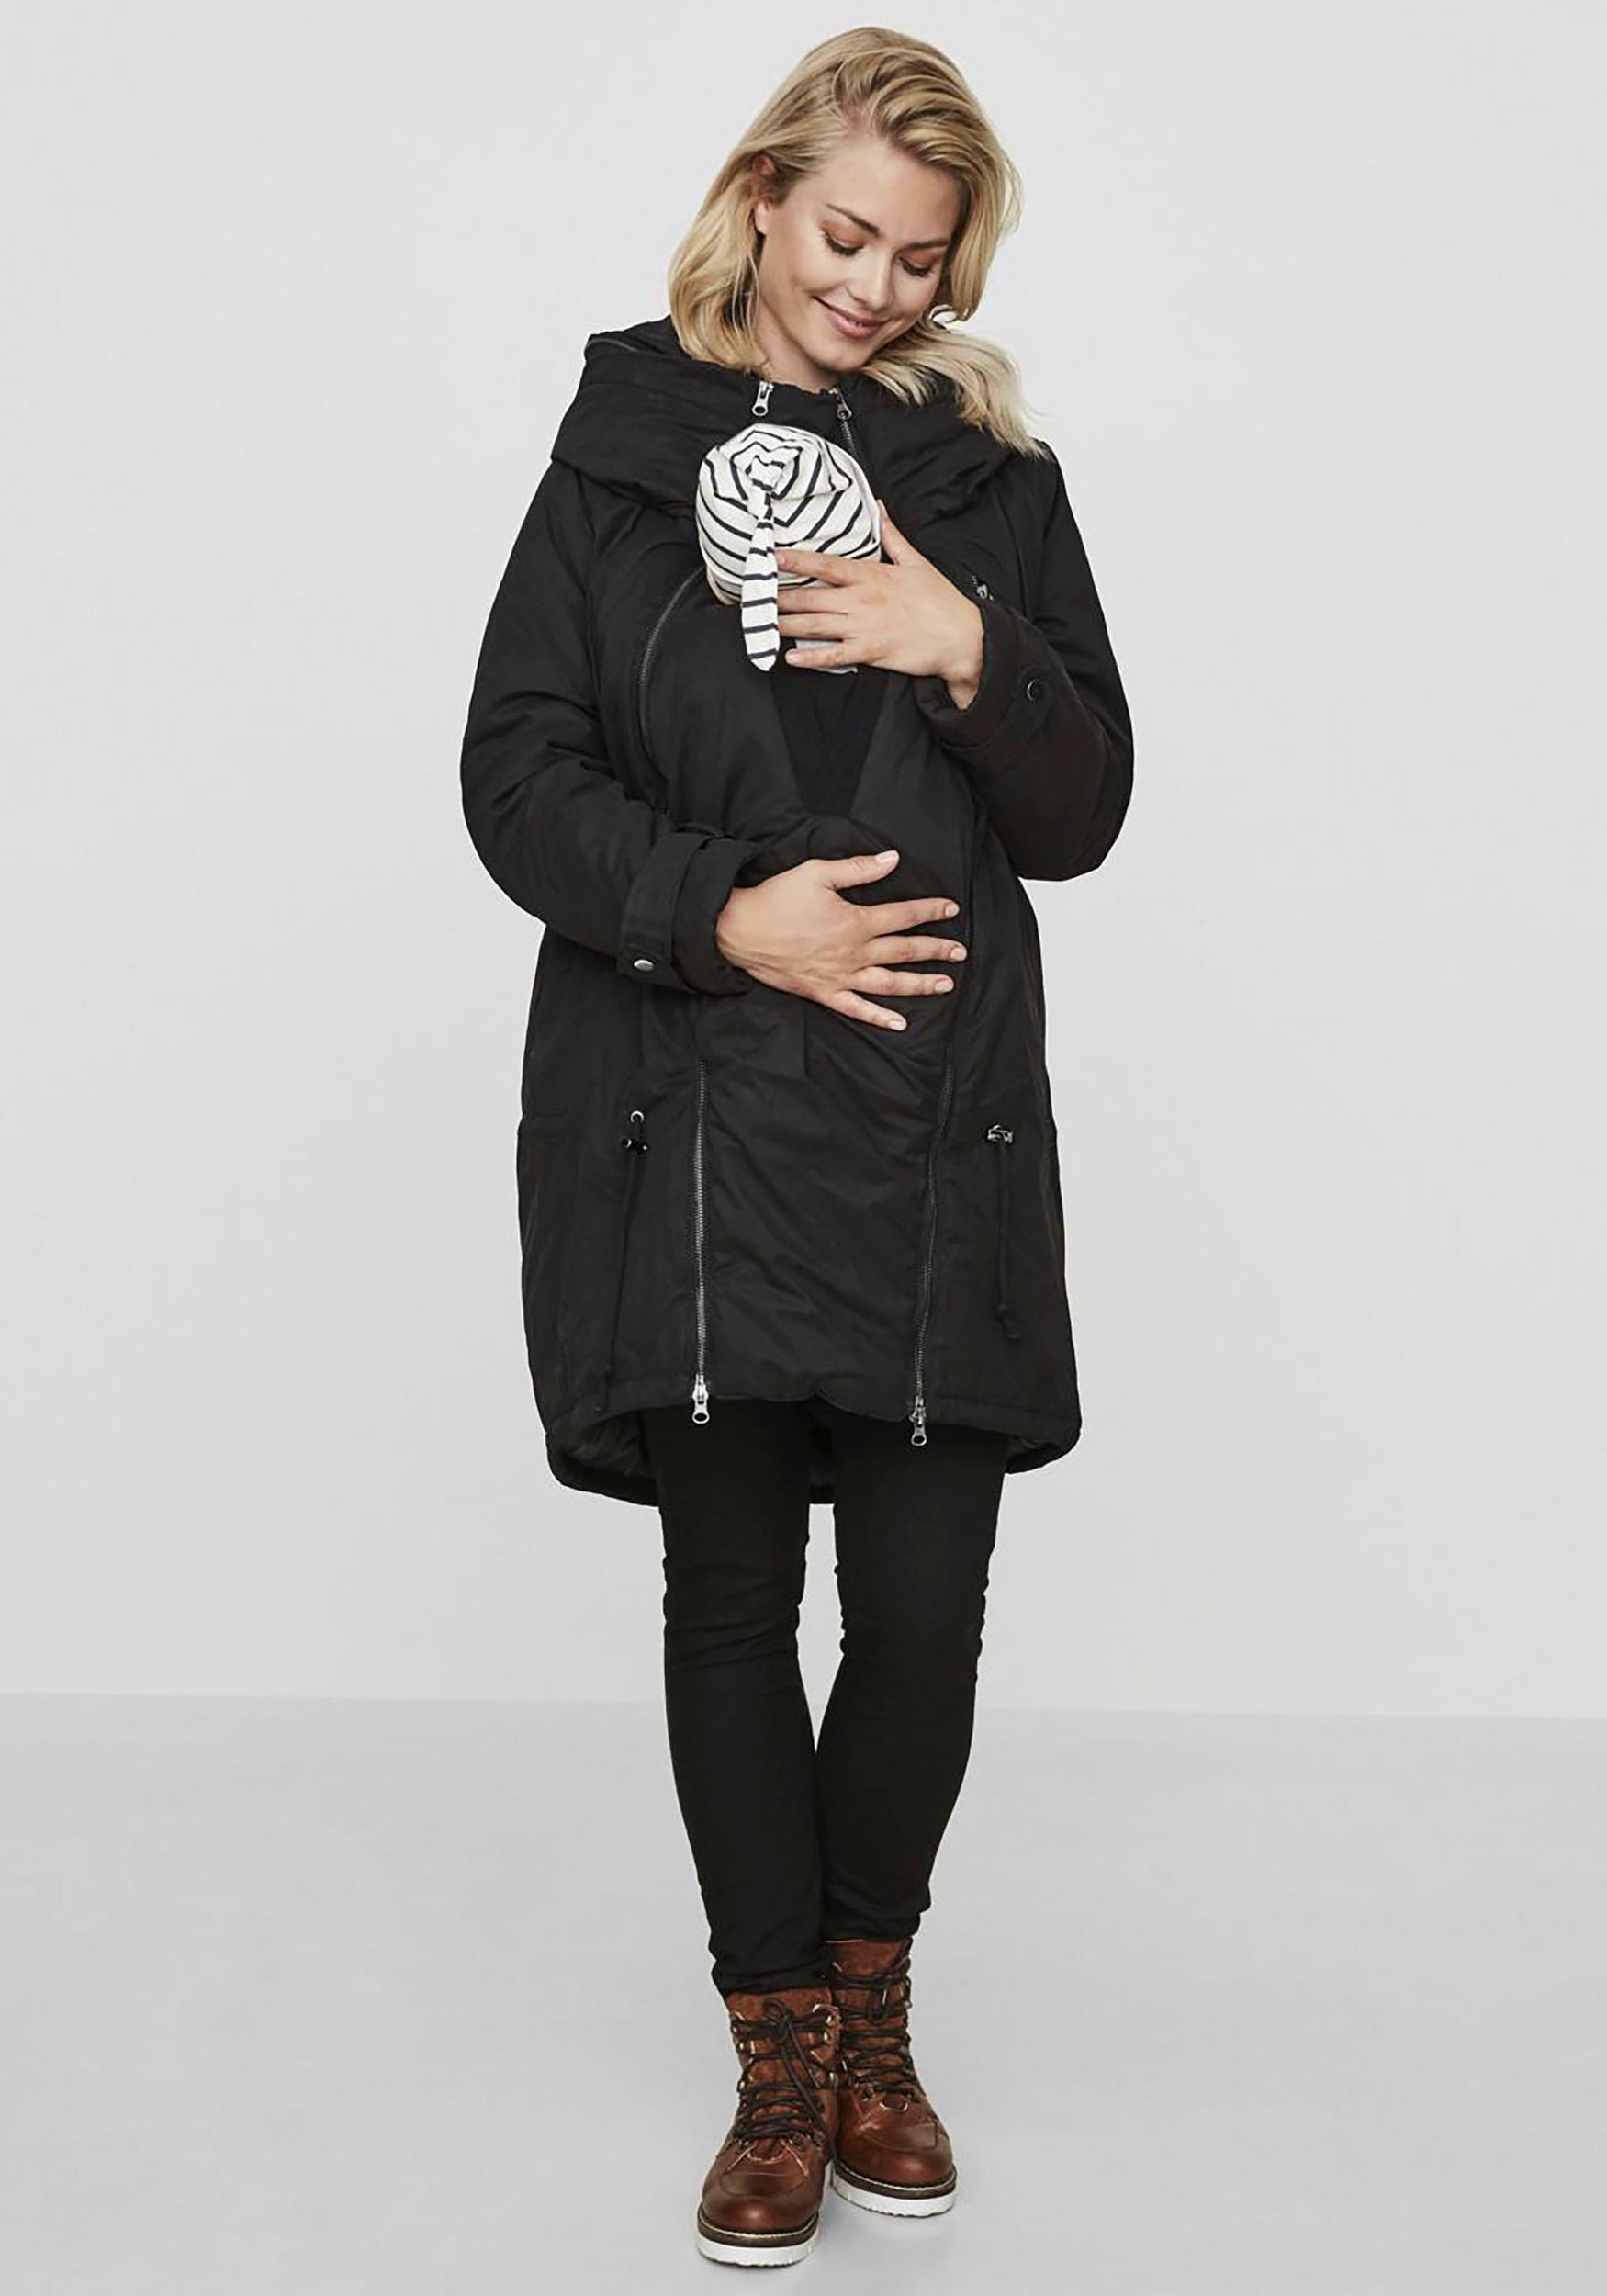 Tragejacke Winter: 7 kuschelige Jacken, um Dein Baby im Winter vorn & hinten zu tragen und dabei gut auszusehen!